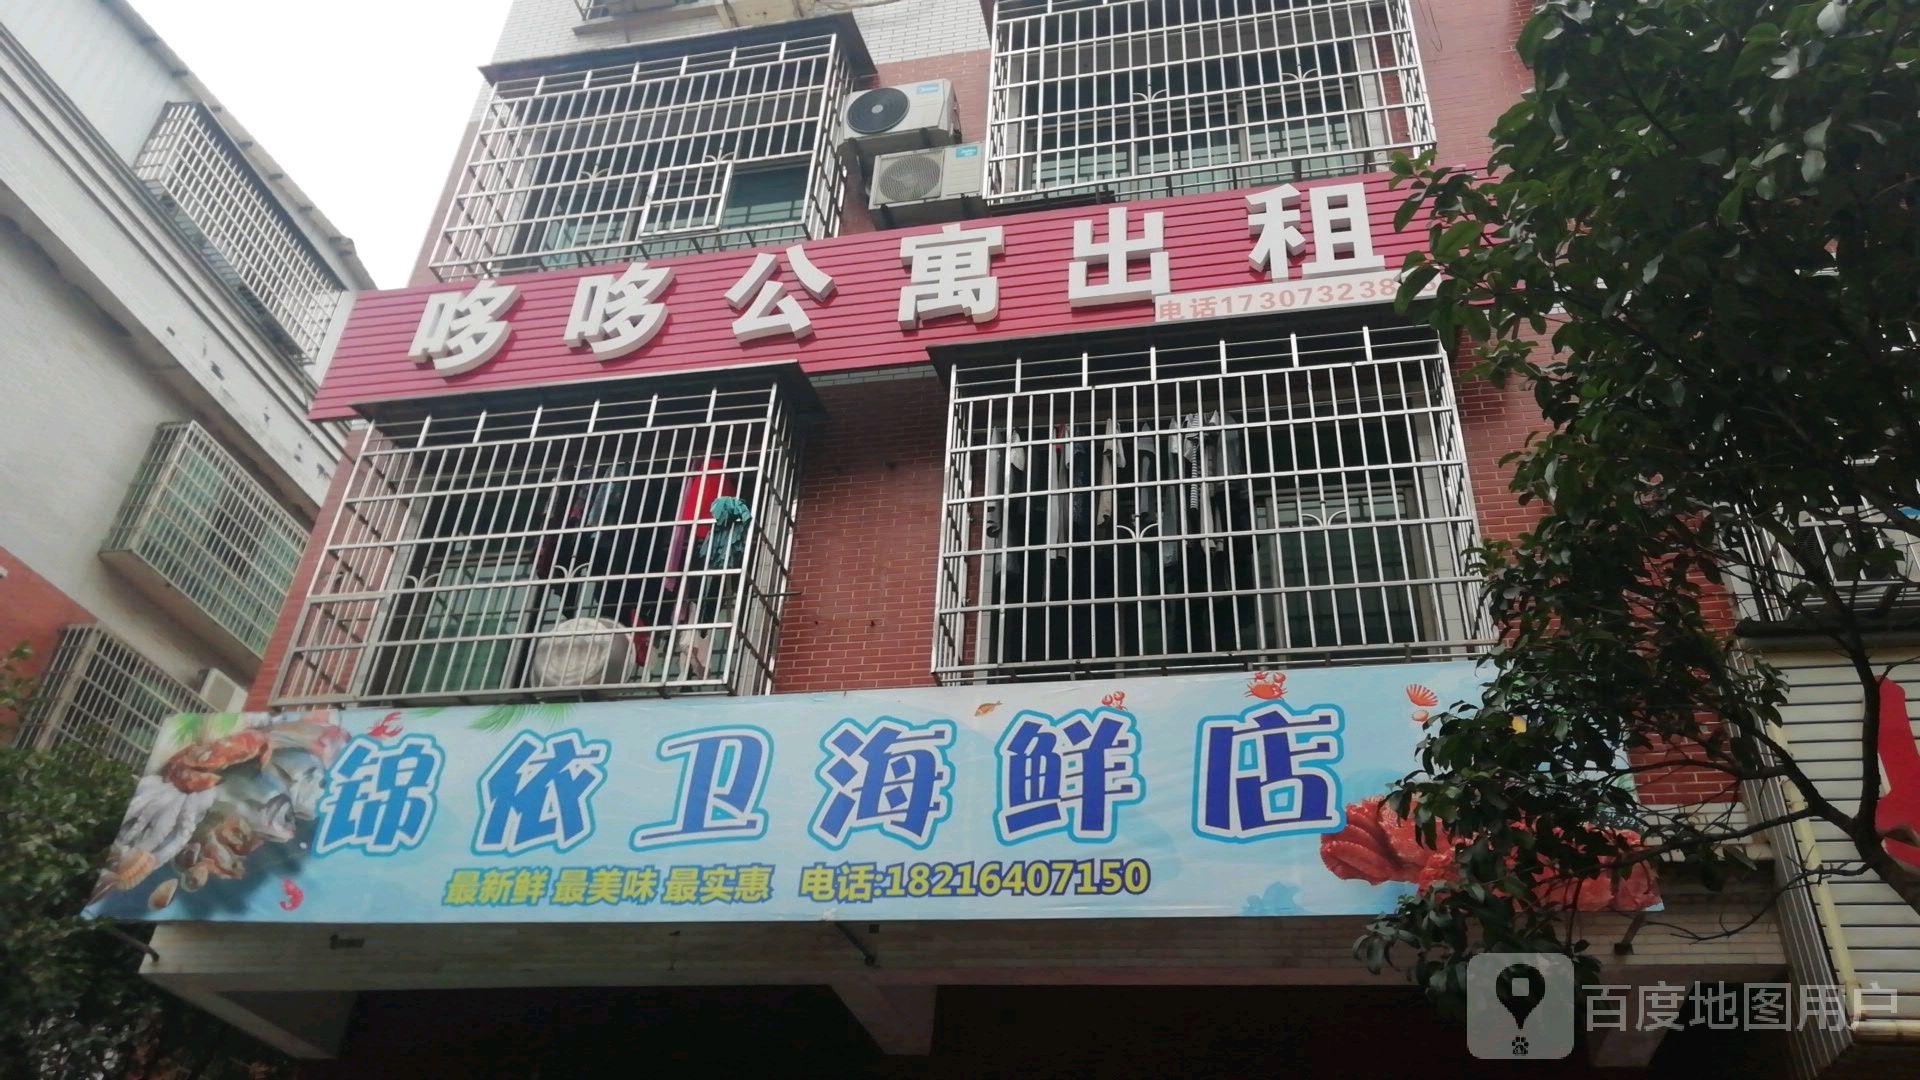 锦依卫海鲜店